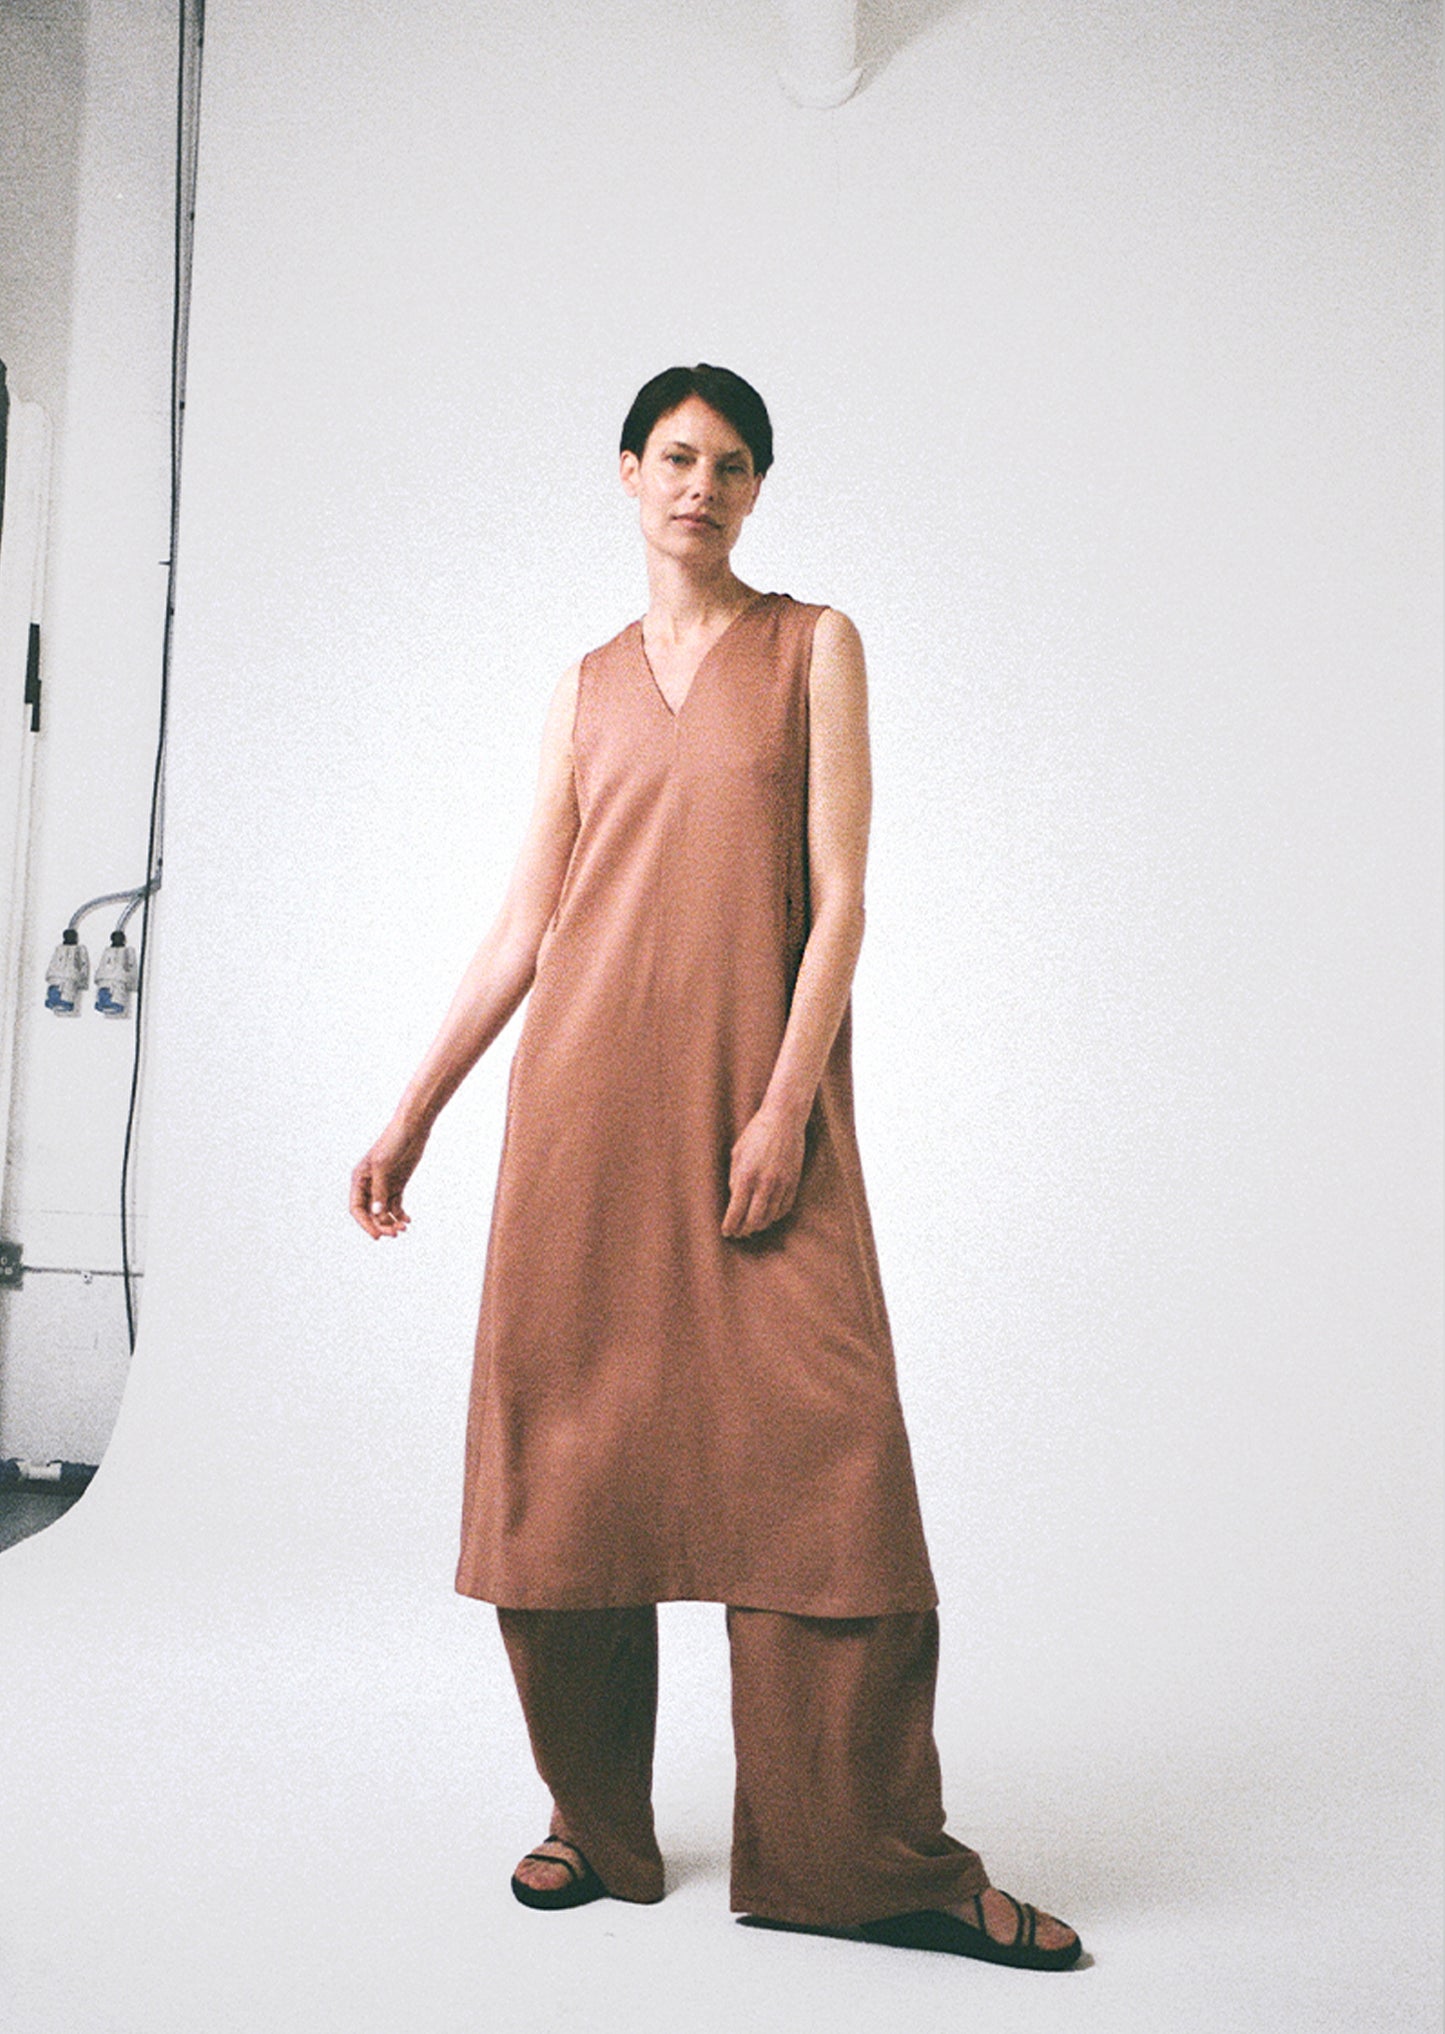 [ 1 ] Panelled A-Line Dress in Terracotta Tencel